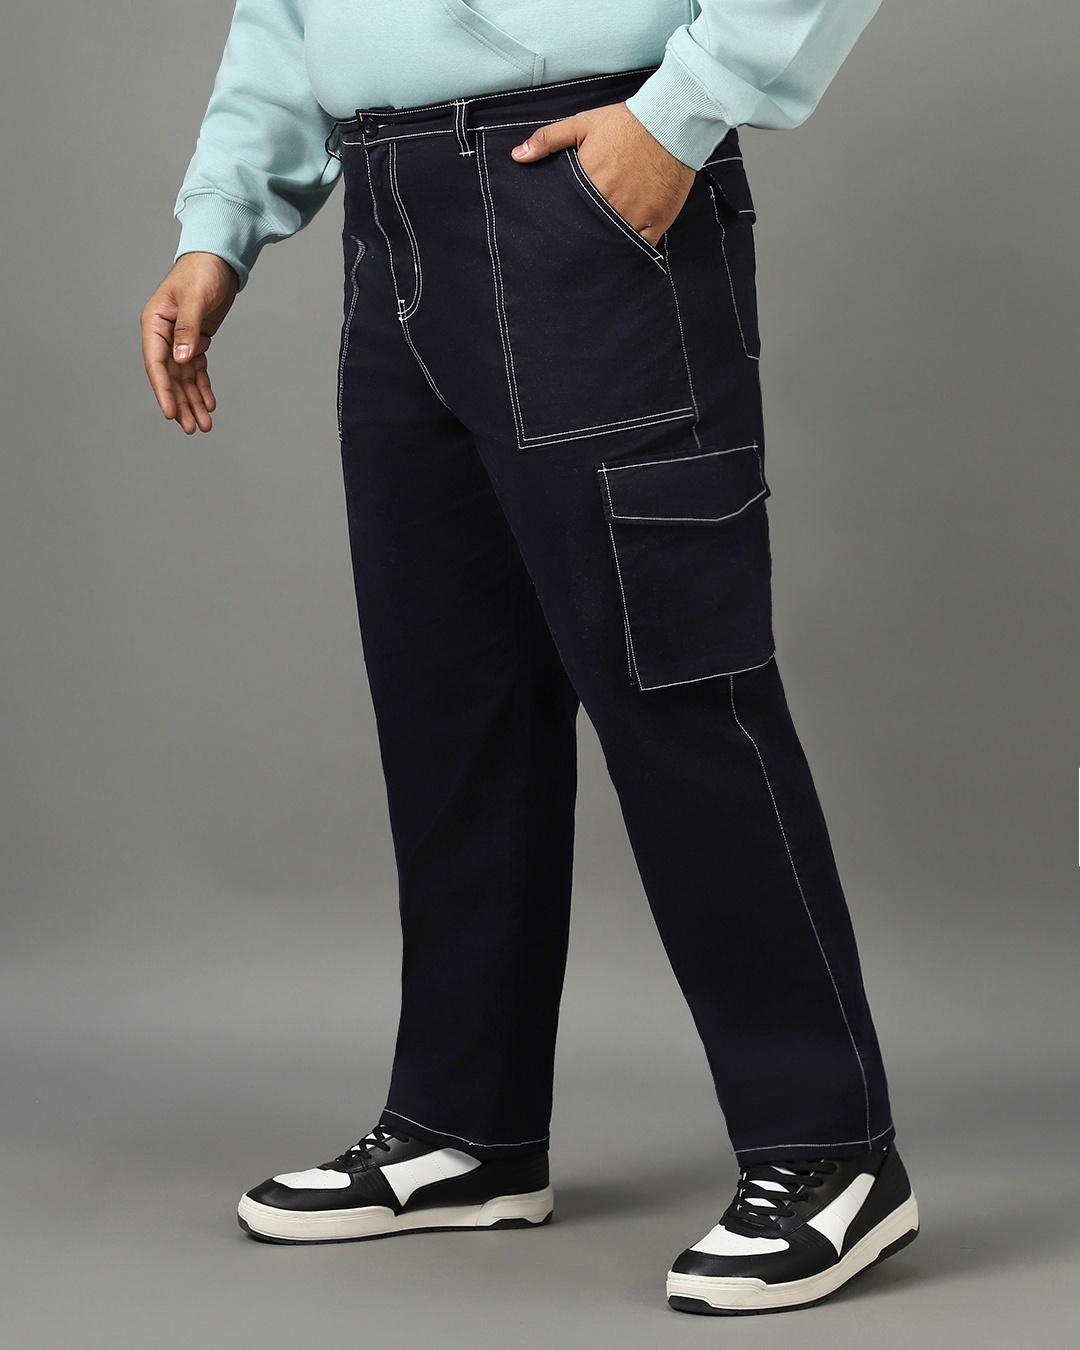 Buy Men's Blue Oversized Plus Size Cargo Pants Online at Bewakoof